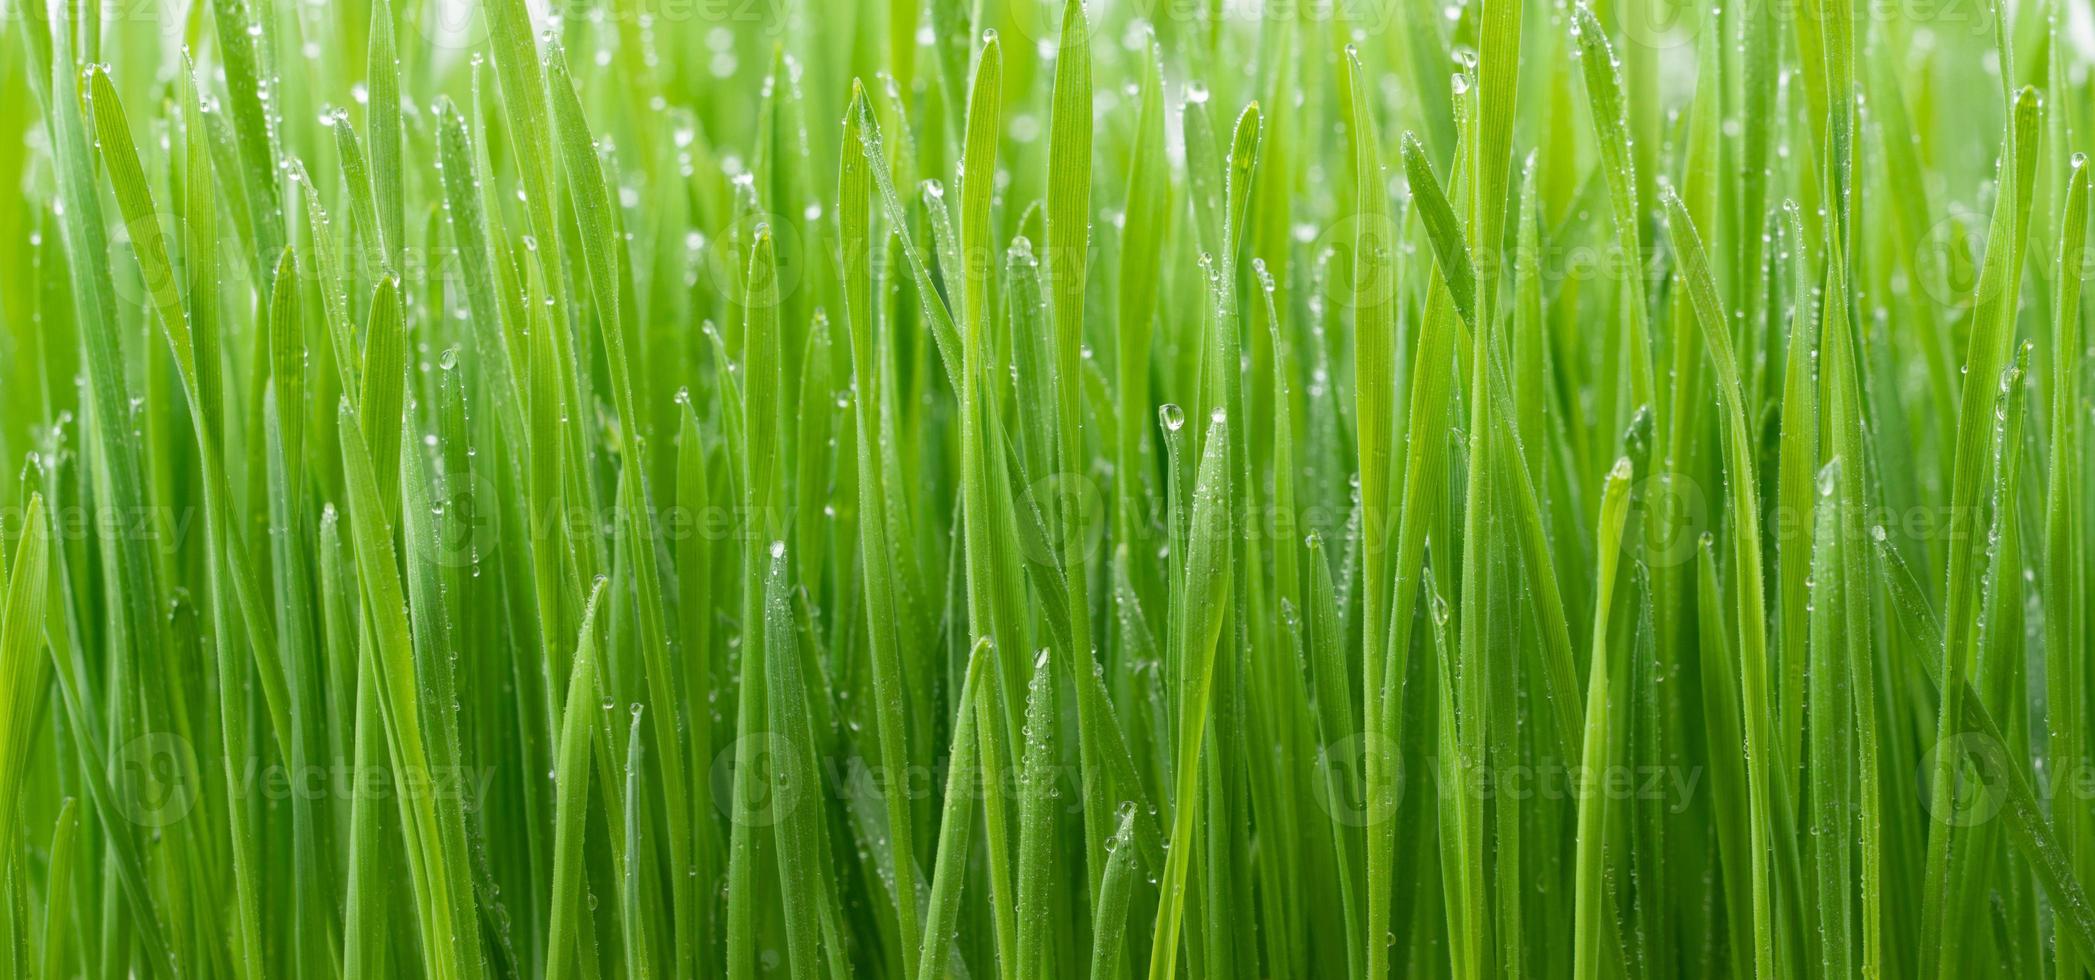 grama de trigo verde foto